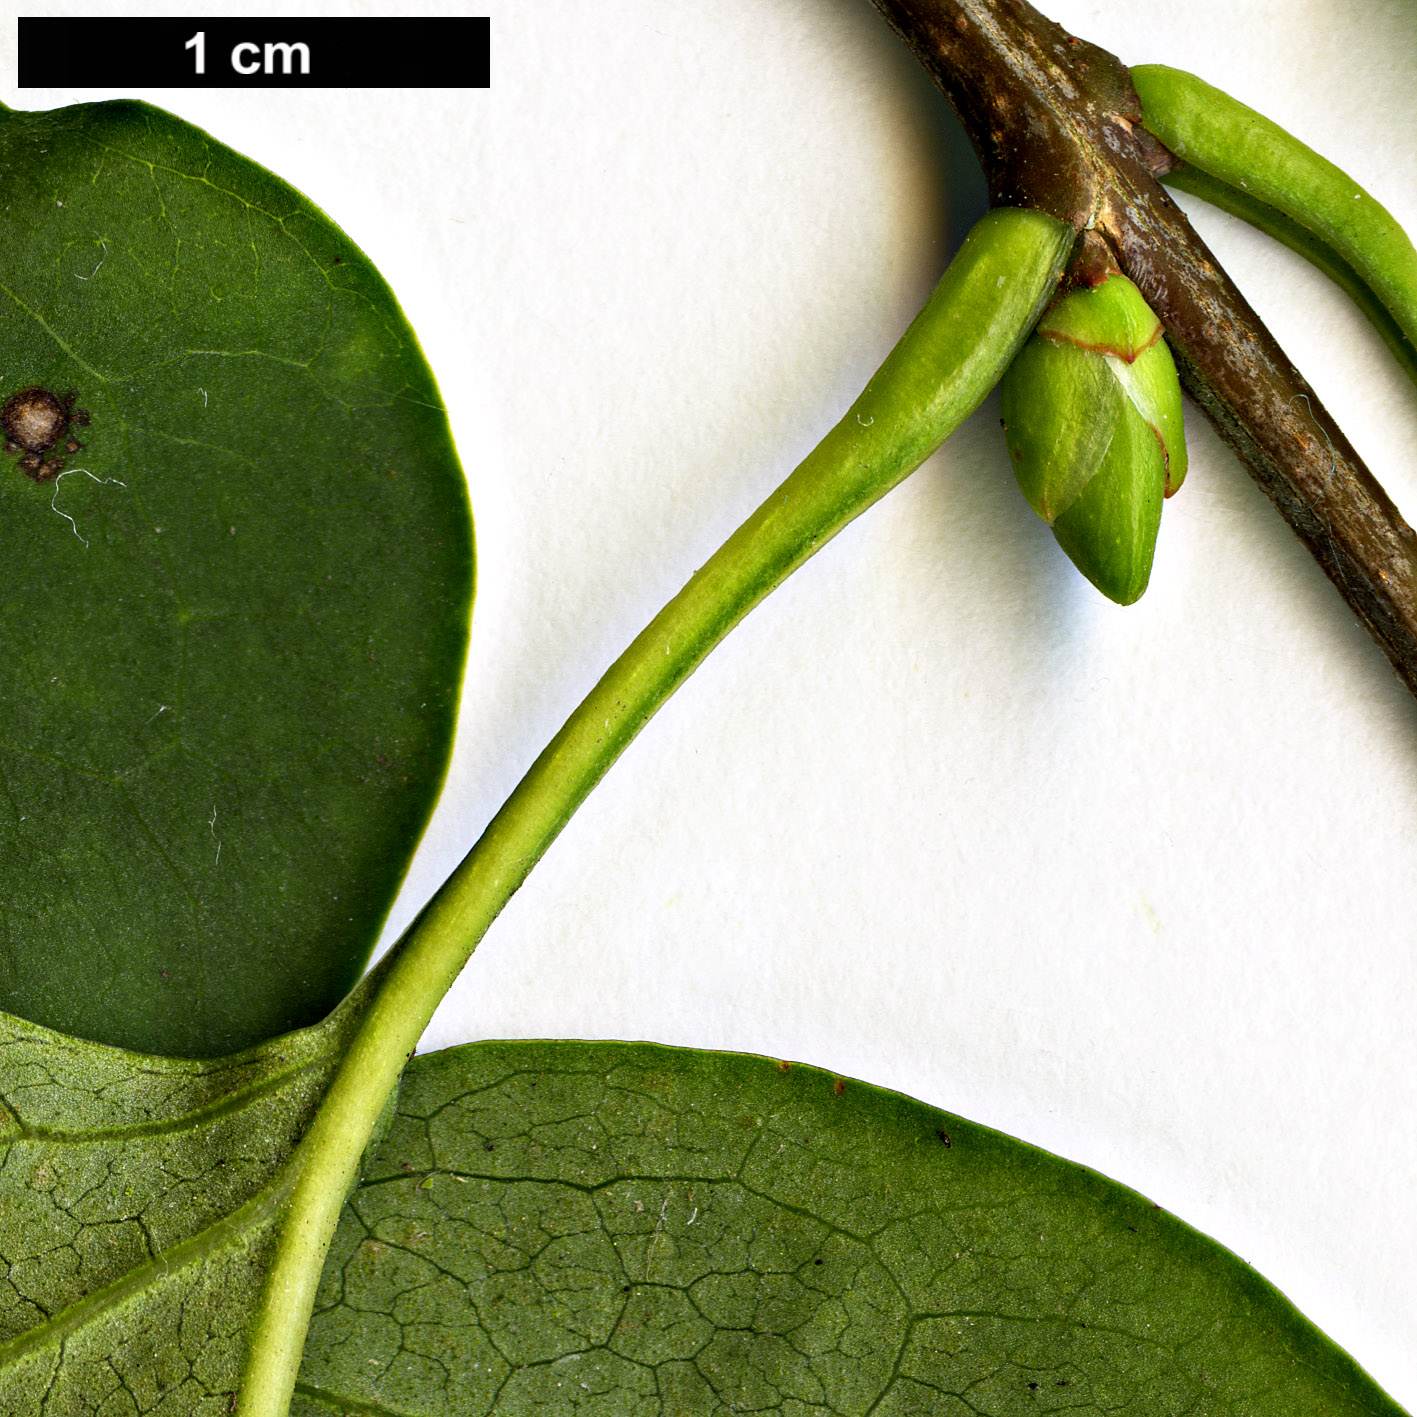 High resolution image: Family: Oleaceae - Genus: Syringa - Taxon: vulgaris